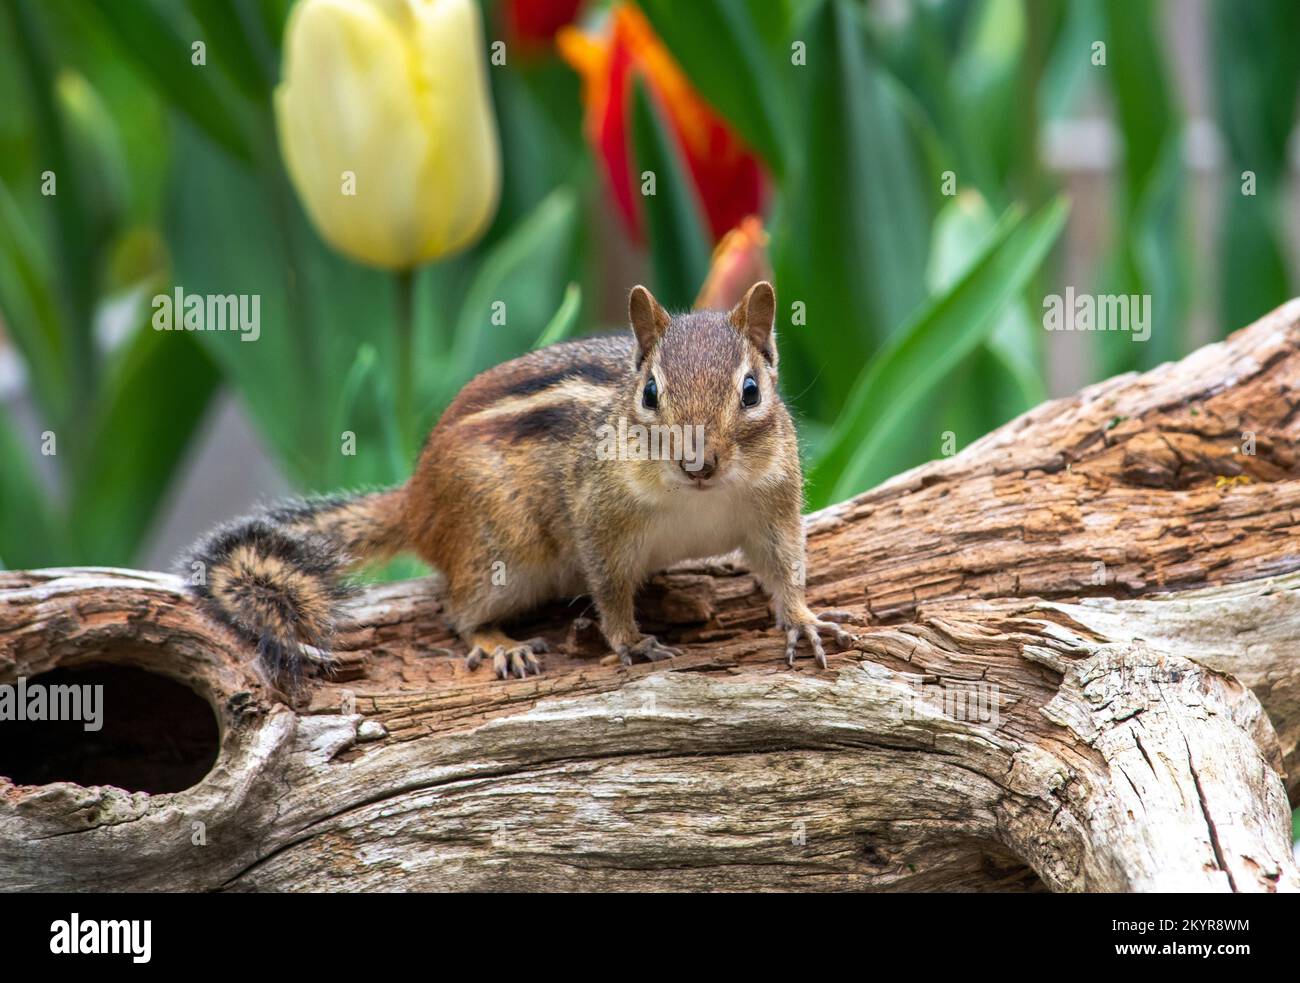 Ein süßer kleiner Chipmunk steht auf einem hohlen Baumstamm in einem Tulpengarten im Frühling wach Stockfoto